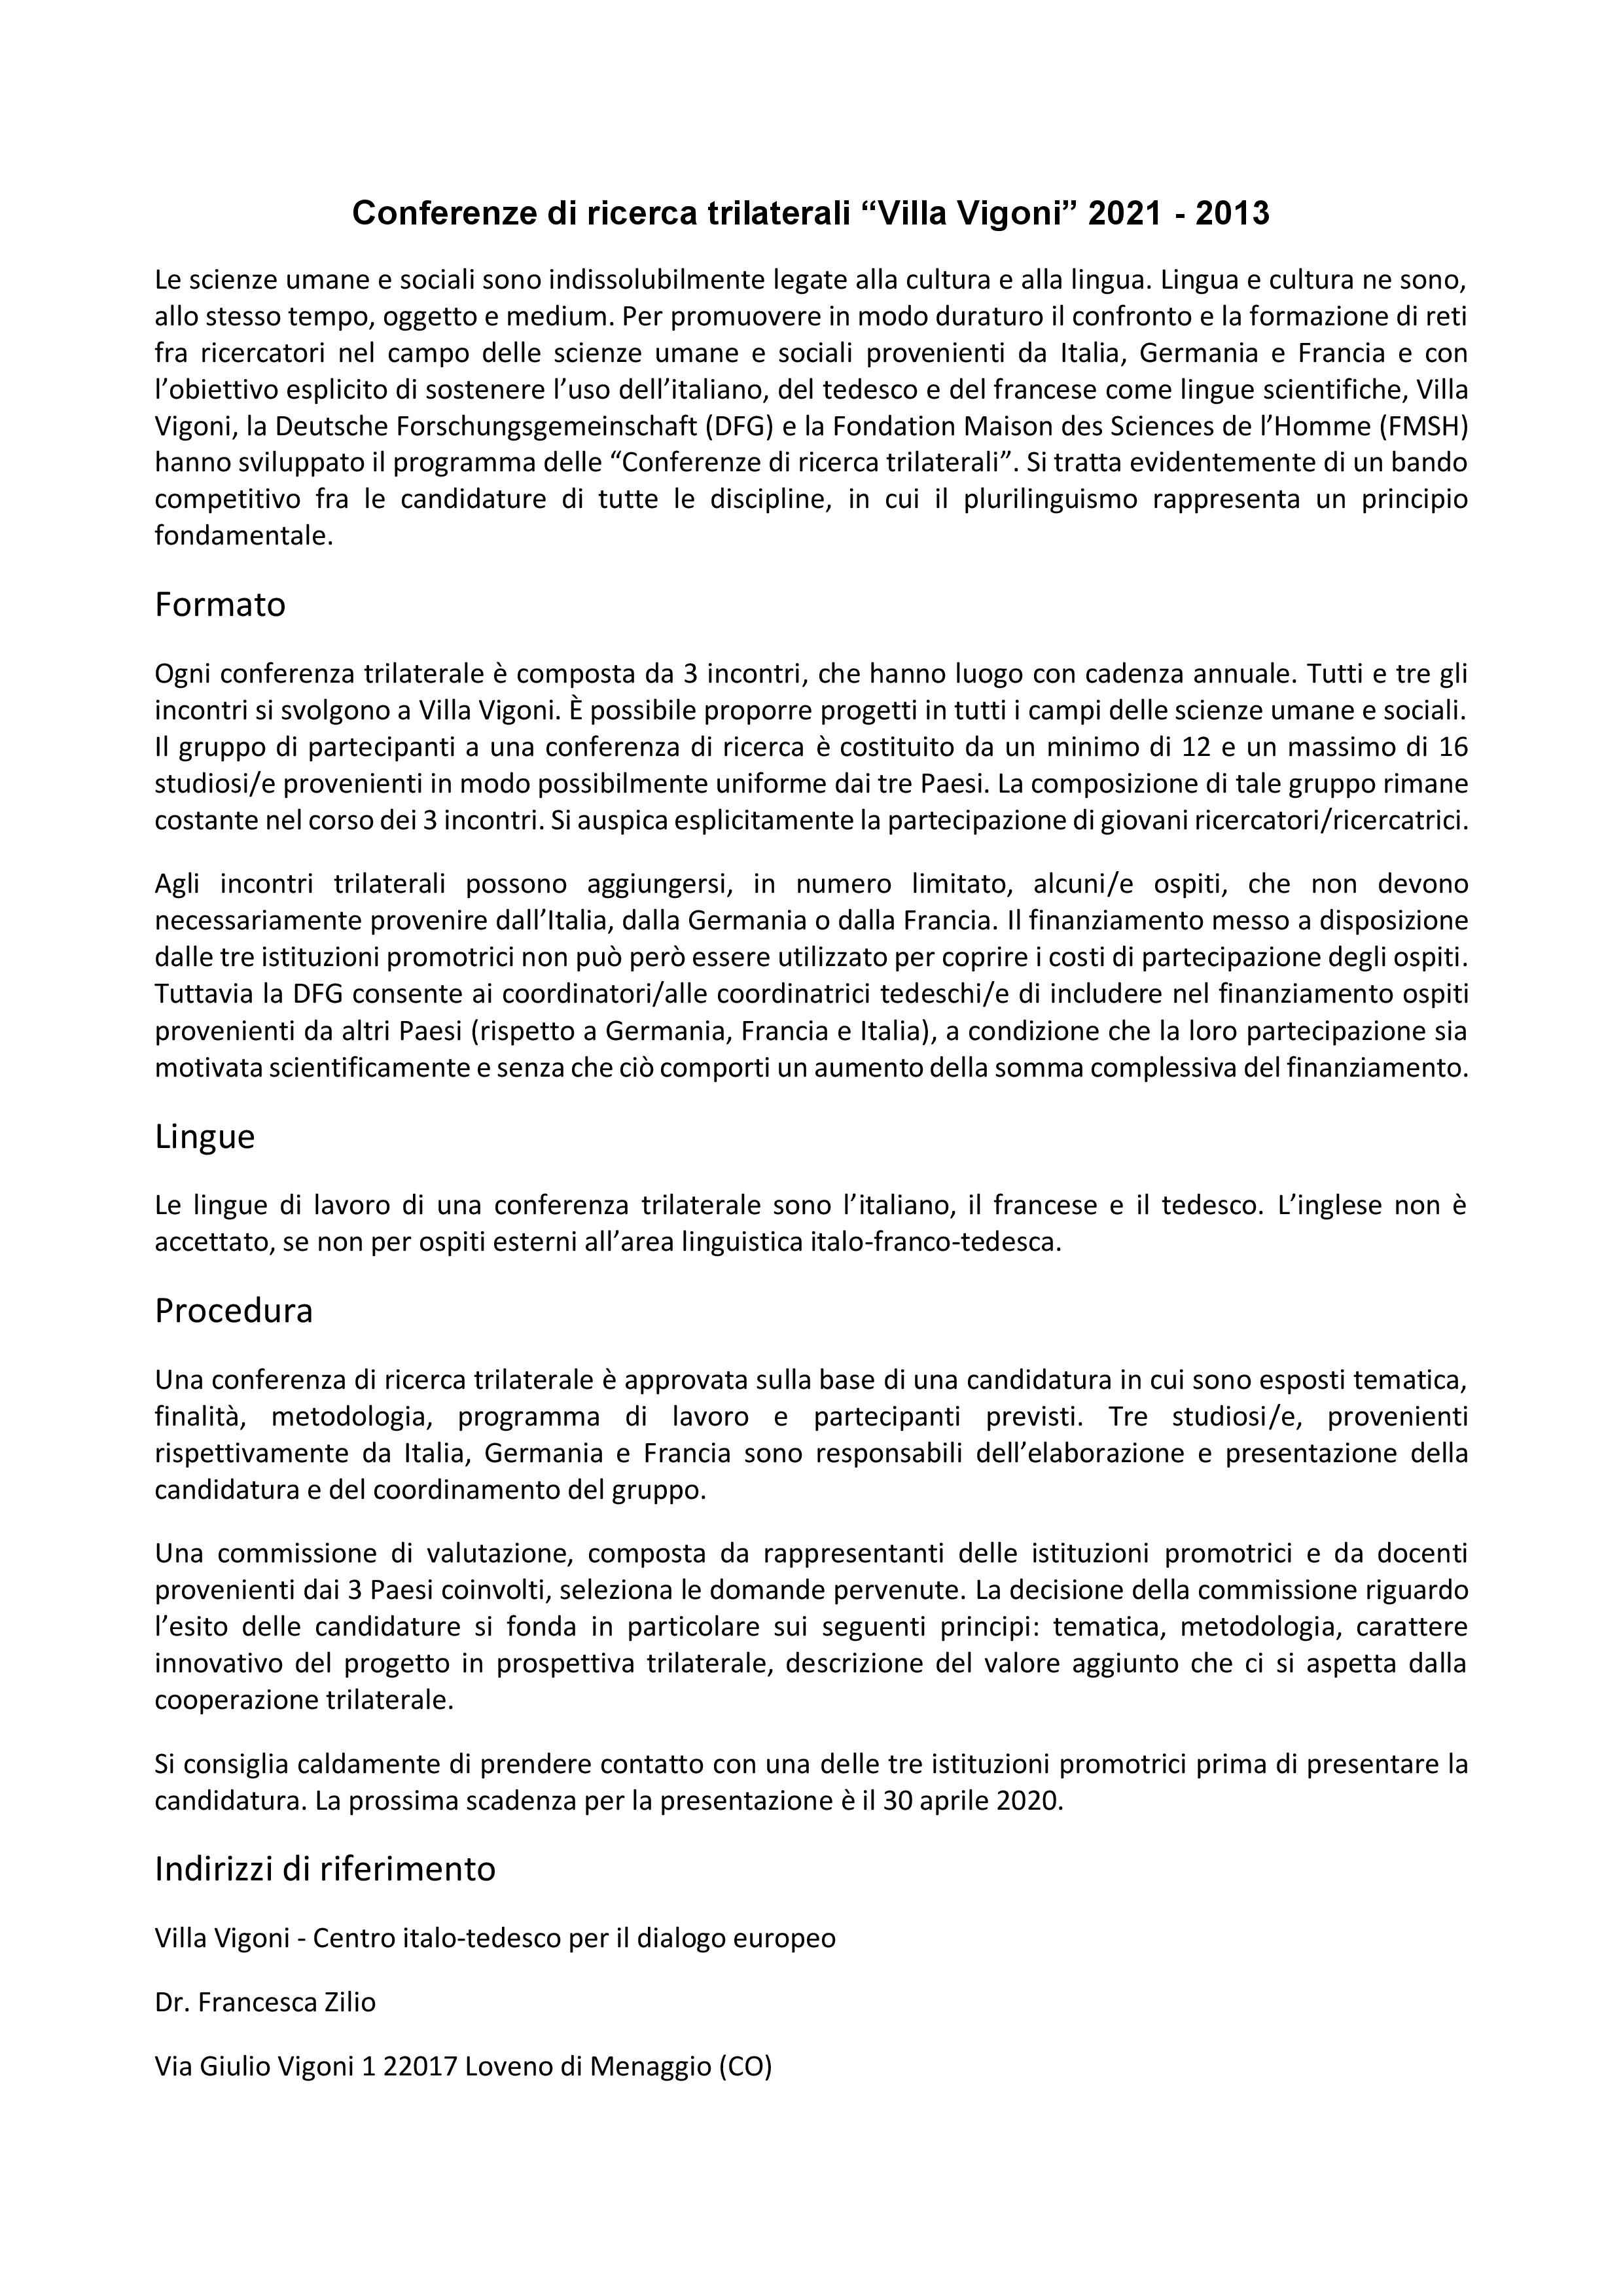 Conferenze-di-ricerca-trilaterali_2021-2023__BANDO-page-004